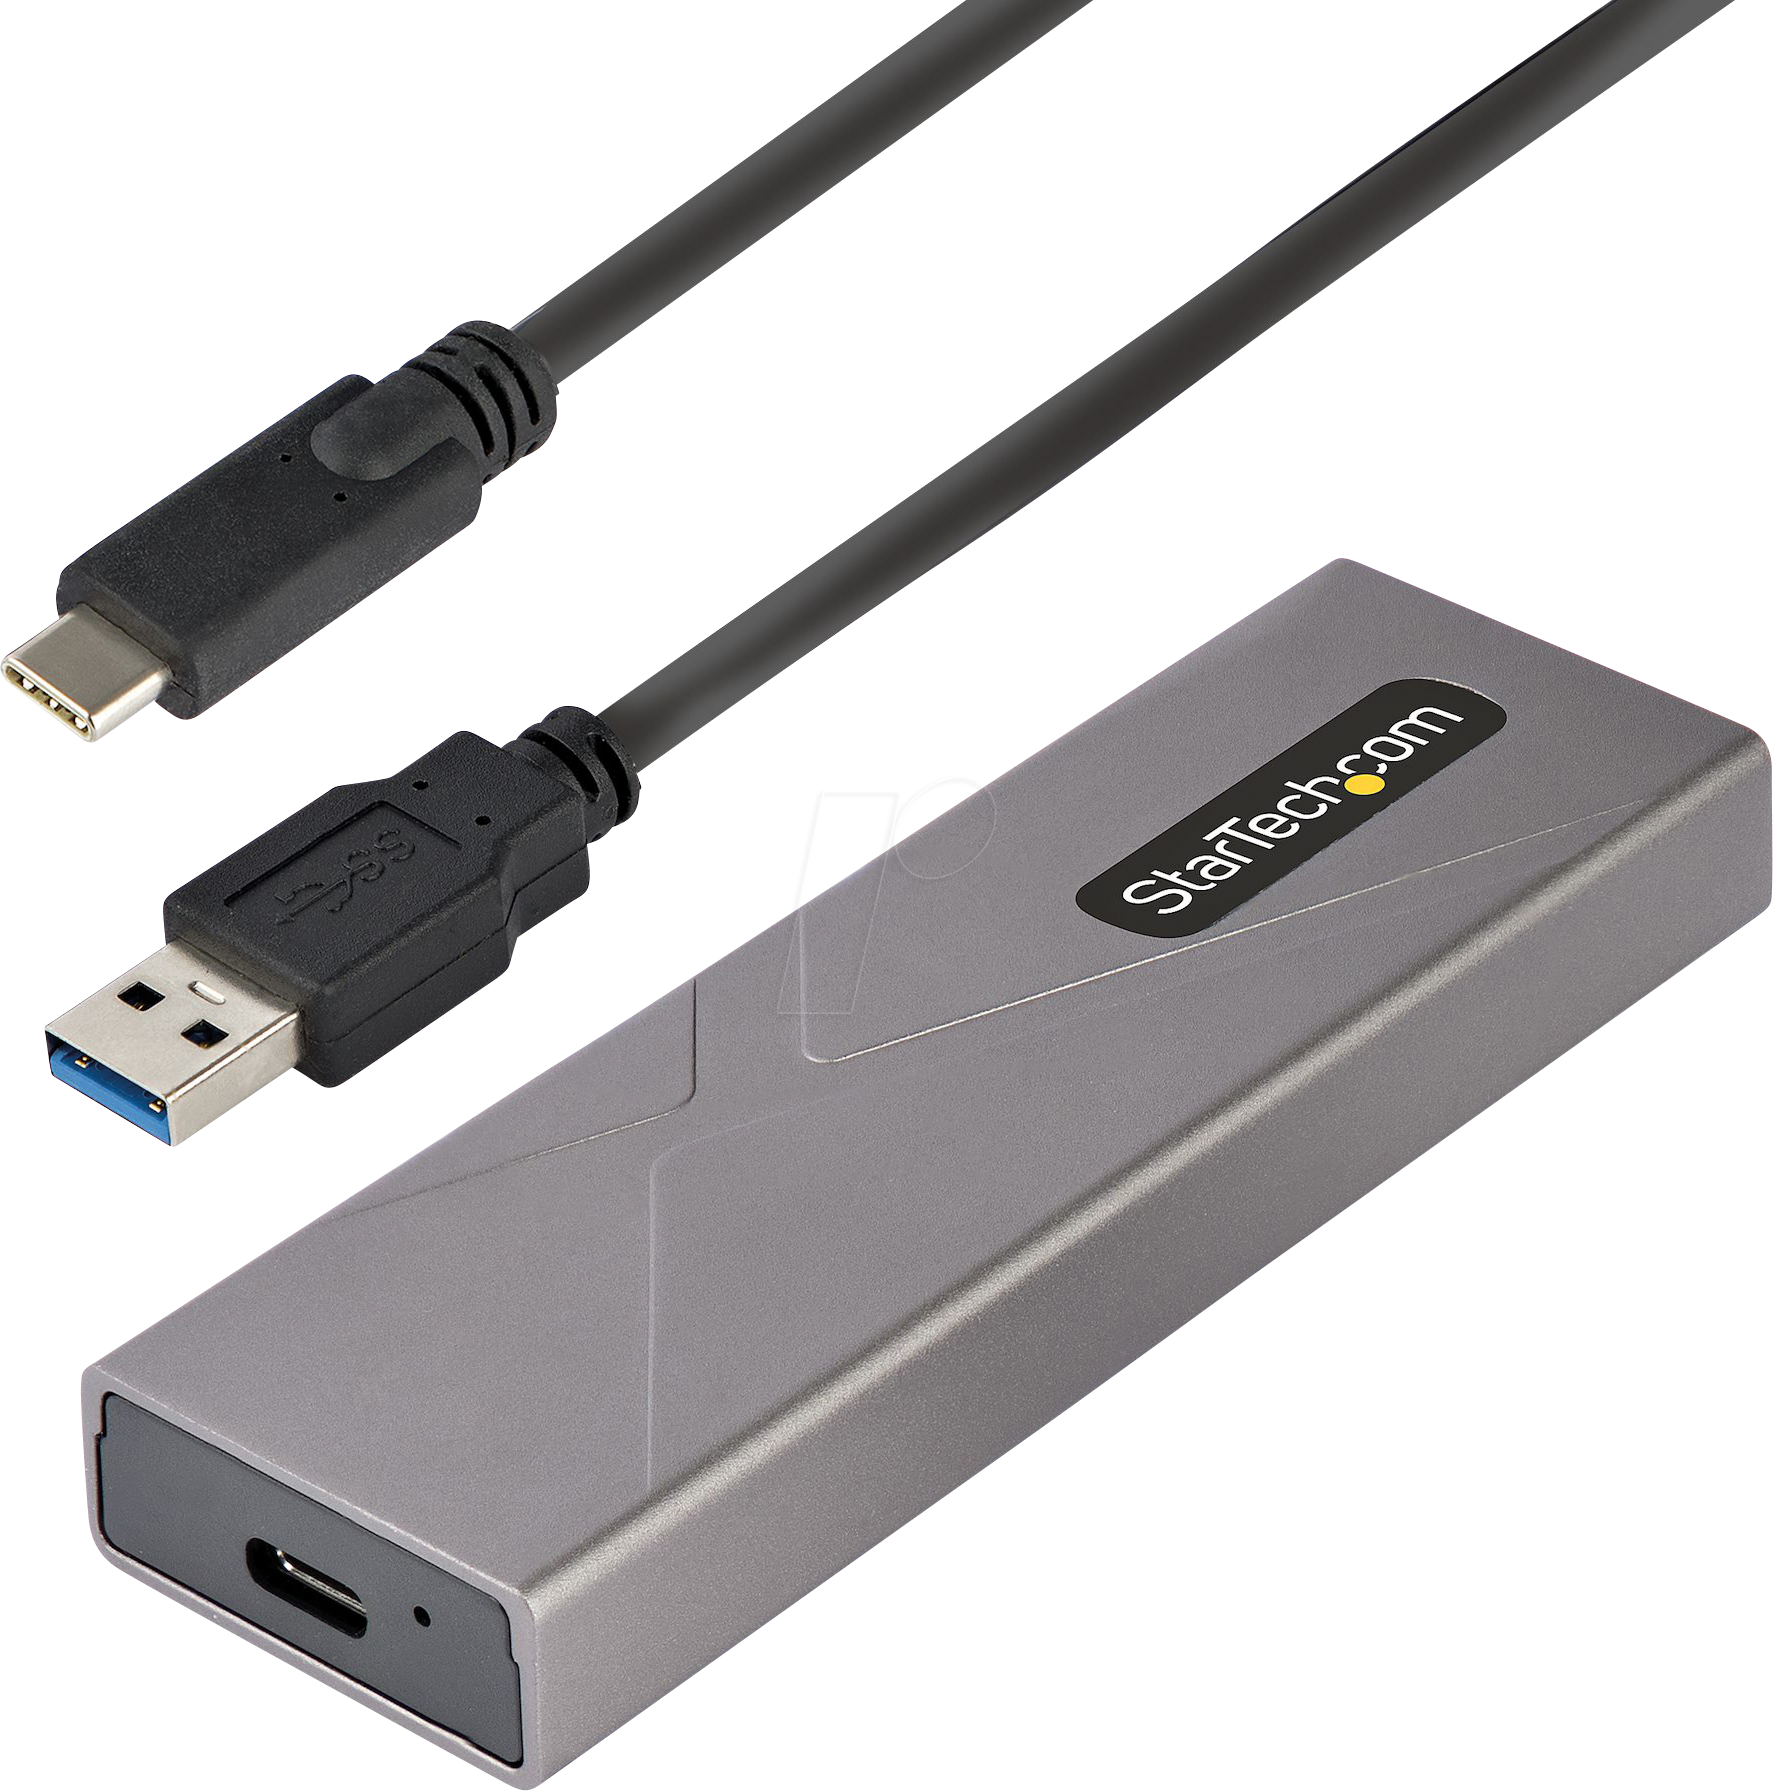 LC-M2-C-NVME: Boîtier SSD M.2 NVMe externe avec USB 3.1 chez reichelt  elektronik